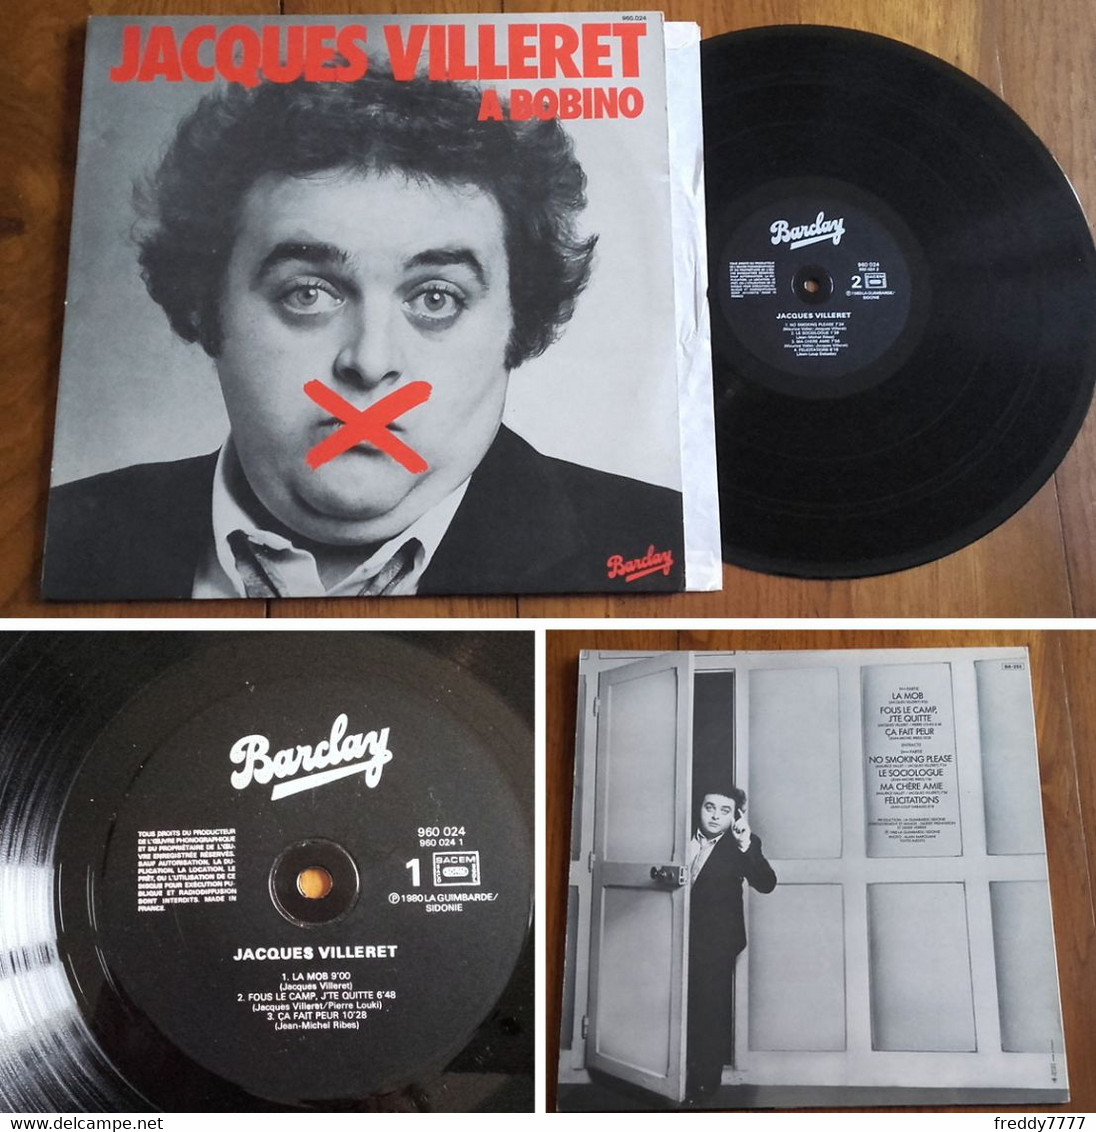 RARE French LP 33t RPM (12") JACQUES VILLERET à BOBINO (1980) - Collectors